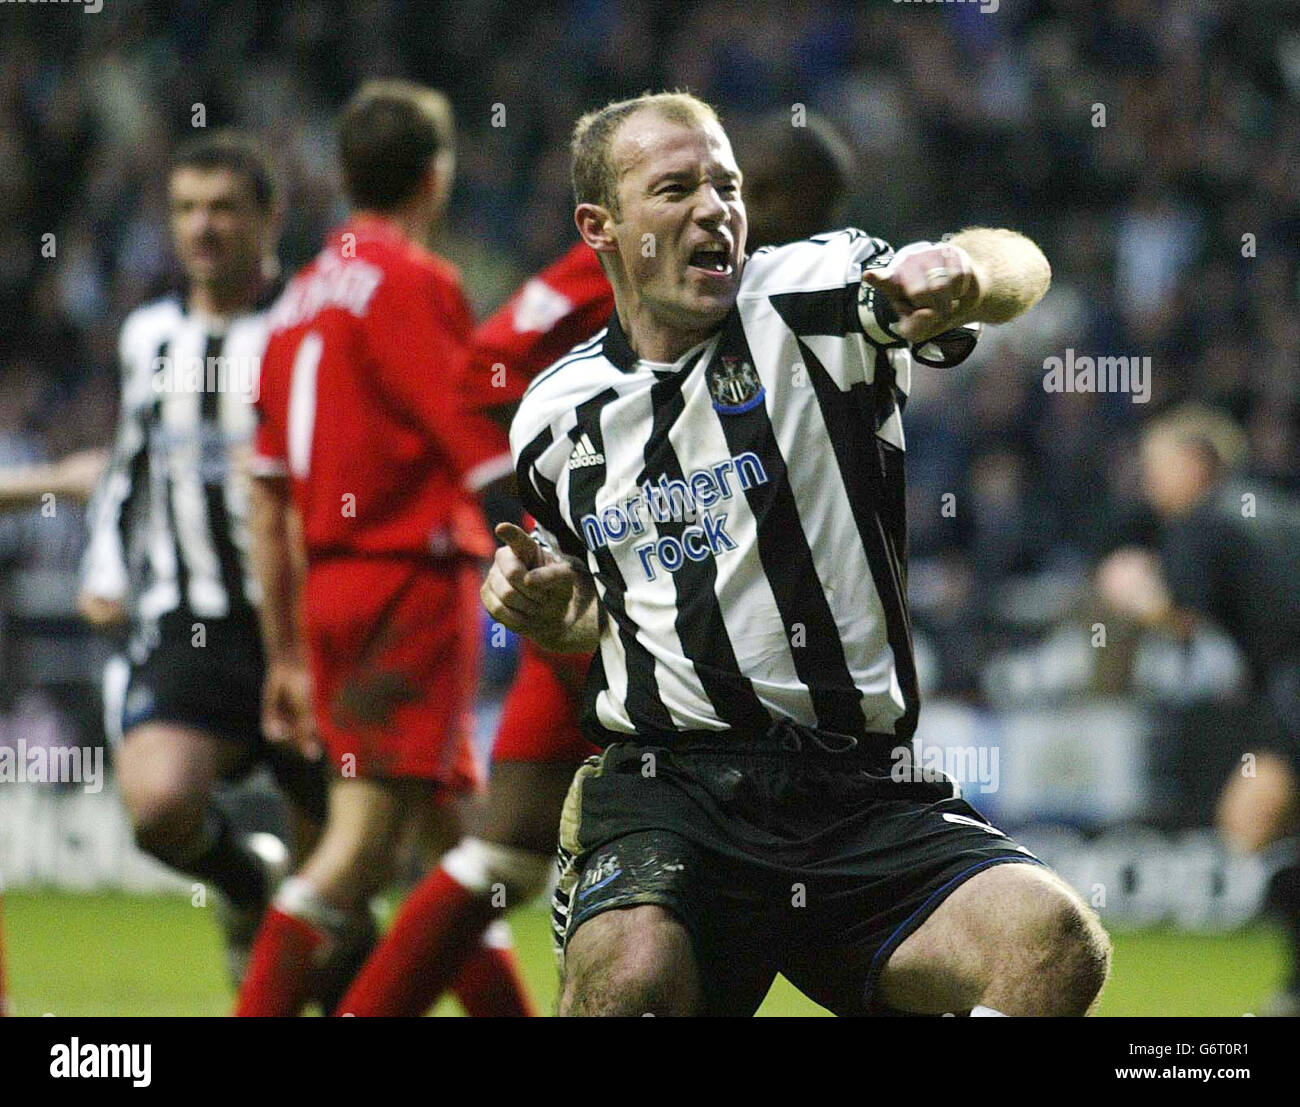 Alan Shearer, de Newcastle United, célèbre après avoir obtenu son score  contre Middlesbrough lors de son match Barclaycard Premiership au stade St  James' Park de Newcastle.22/02/04: Sven-Goran Eriksson, le patron de la